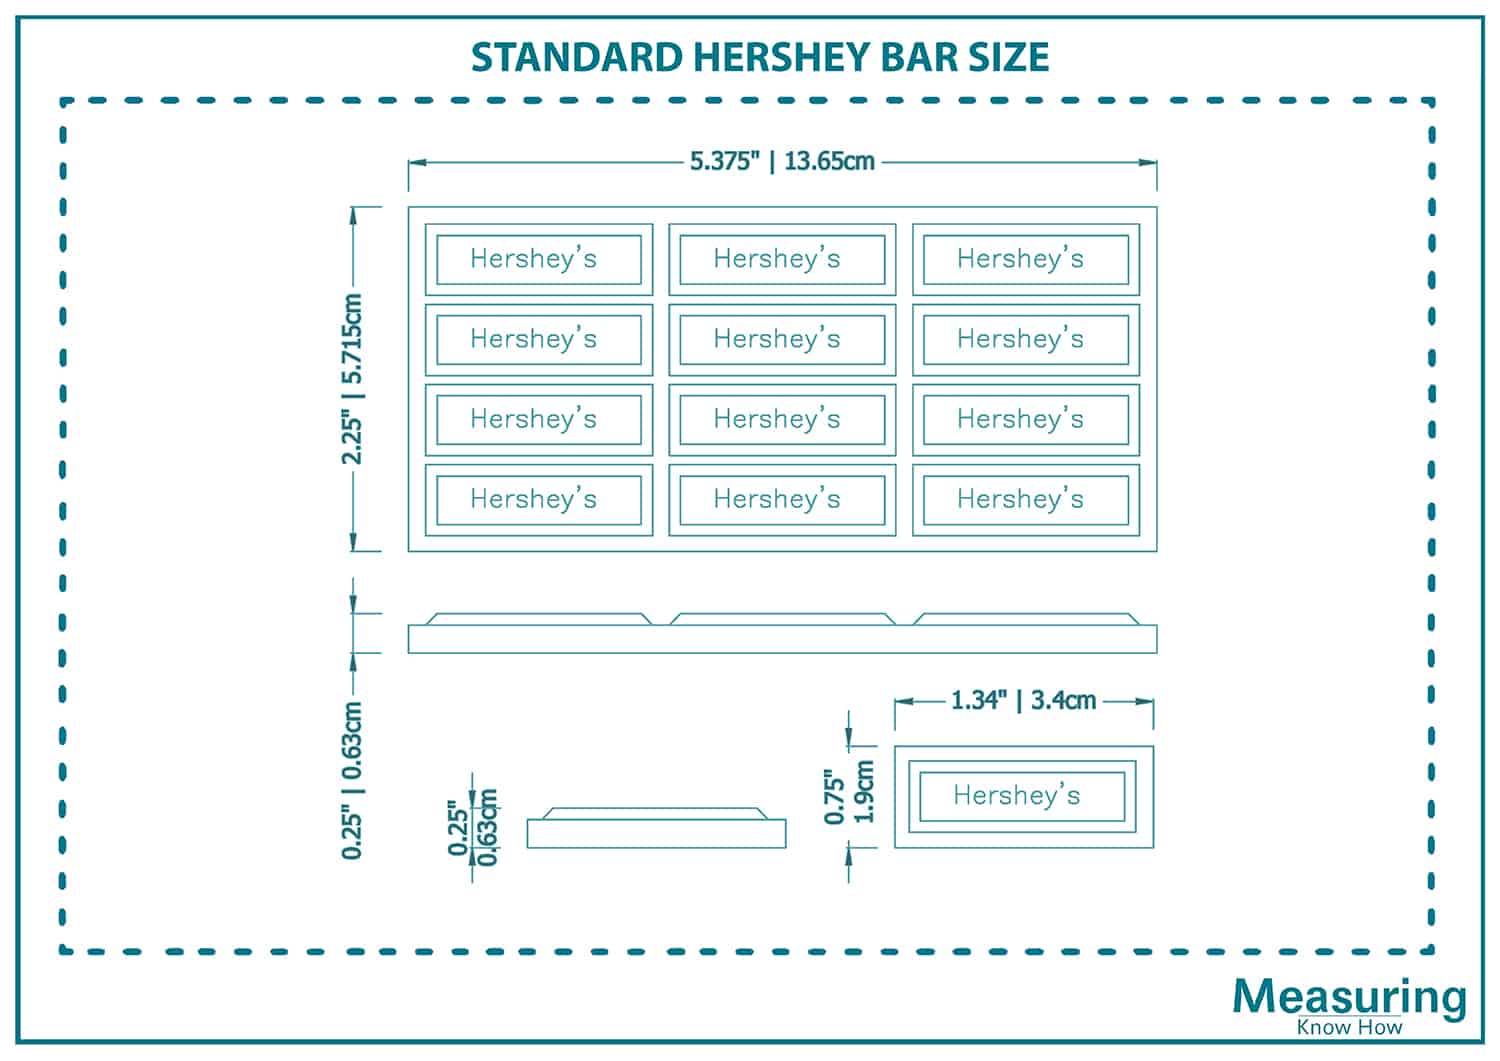 Standard hershey bar size